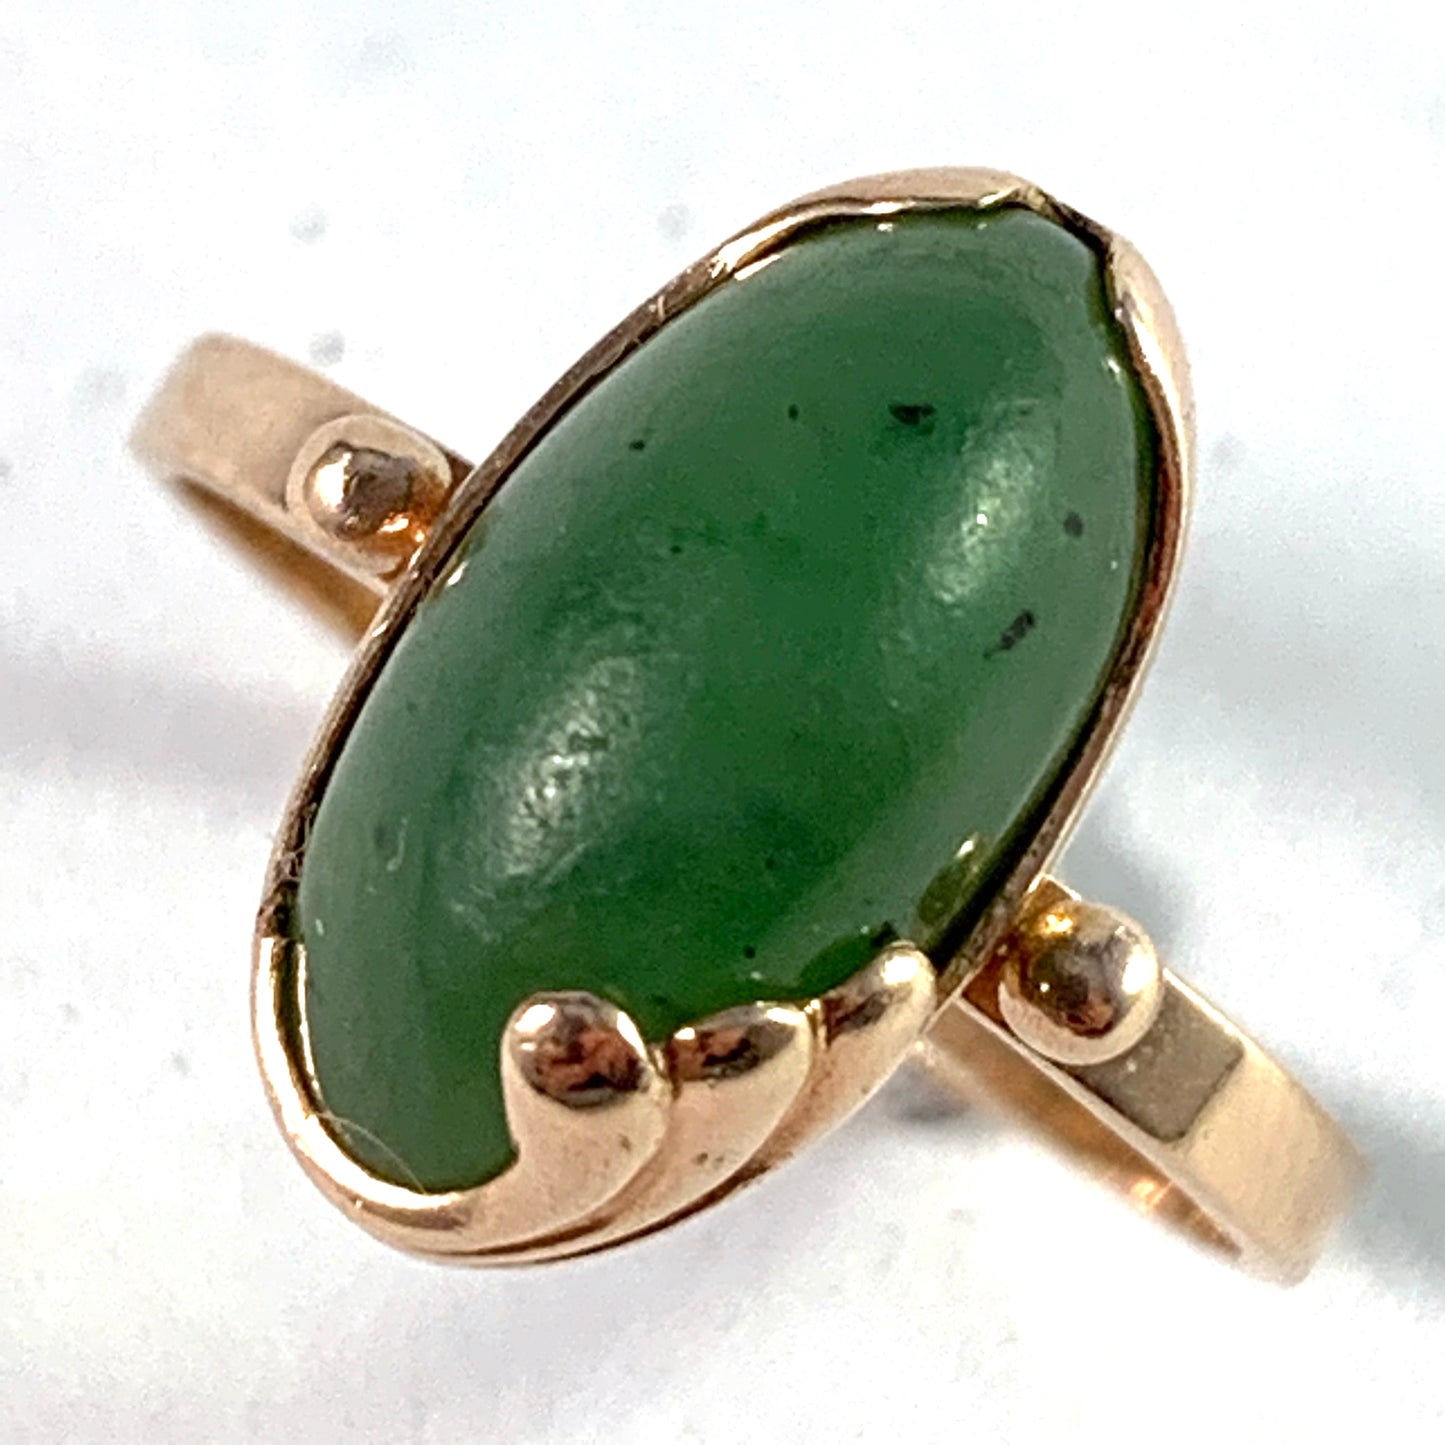 Russia, Soviet Era Mid Century 14k Gold Jade Ring.